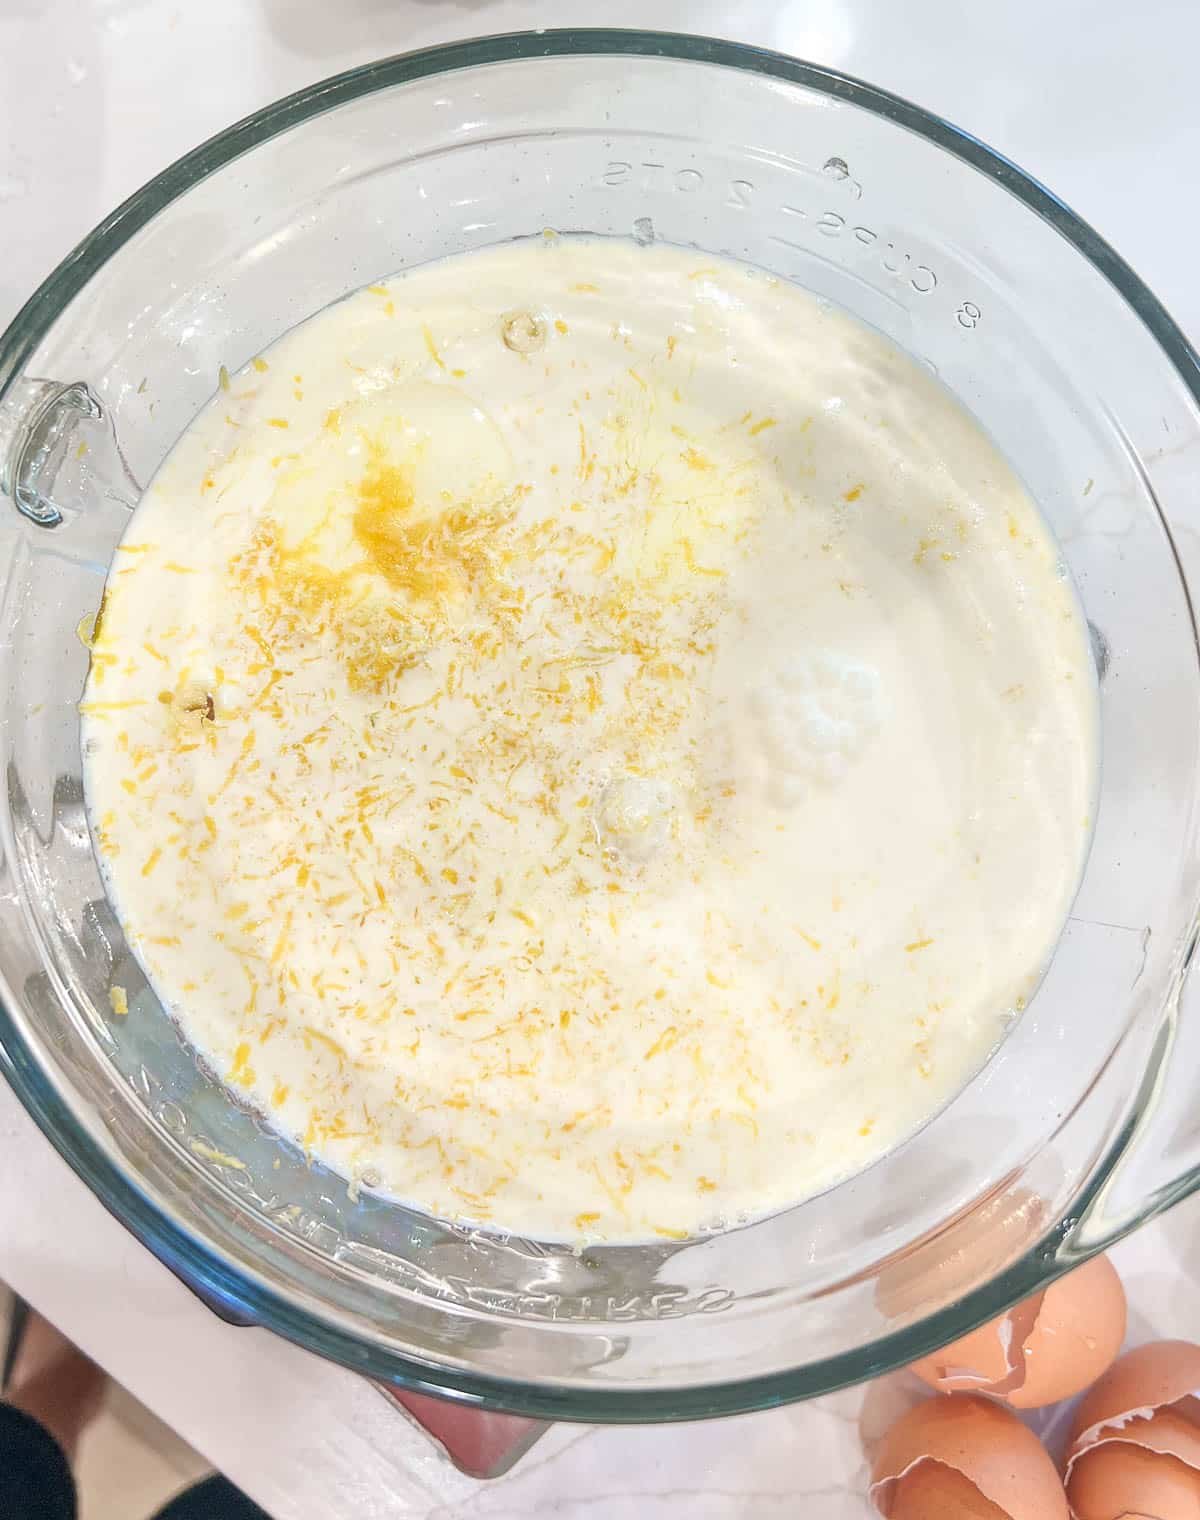 Lemon tart filling in a glass bowl